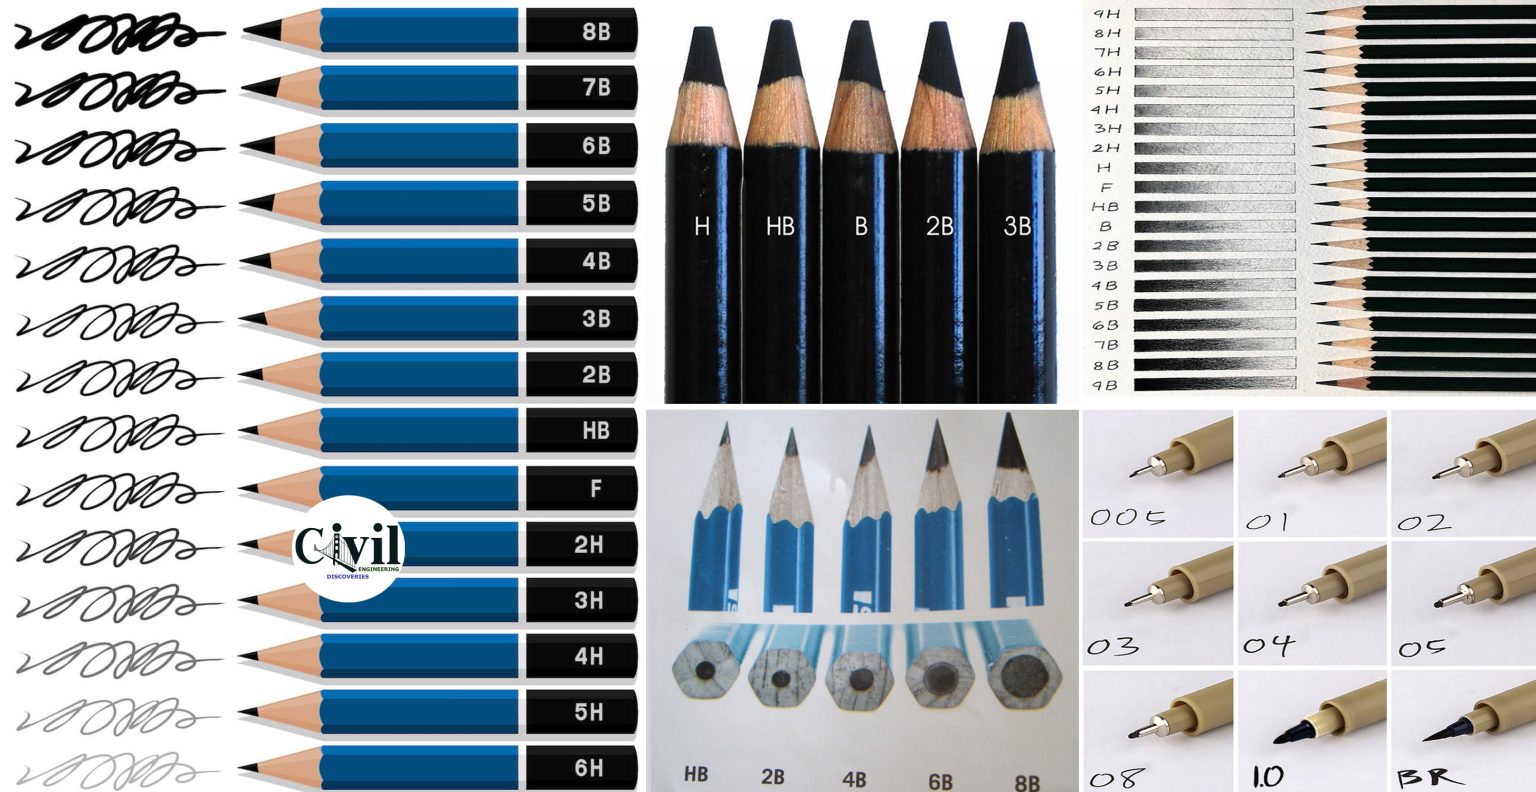 Posing Drawings Pencil Drawings Types Of Pencils - kulturaupice